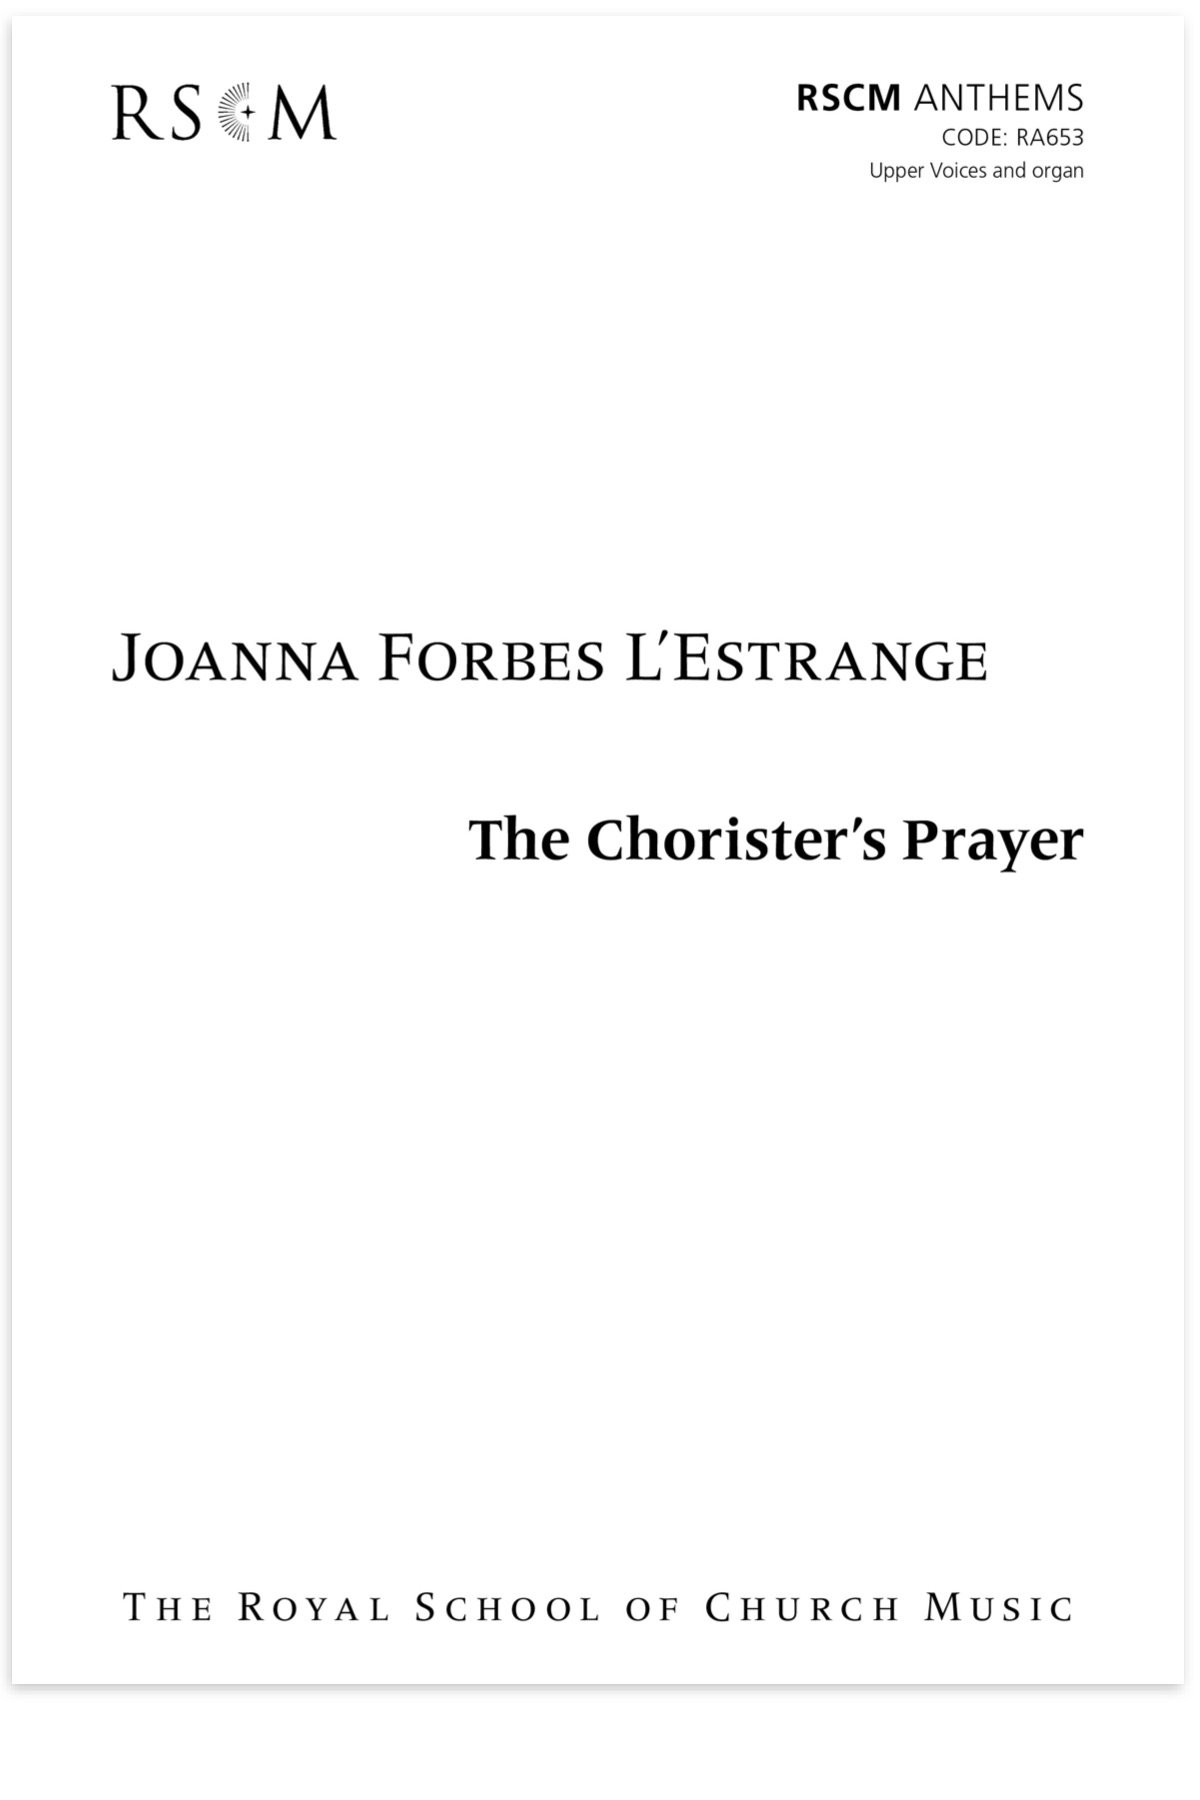 The Chorister's Prayer SA:Men COVER.jpg